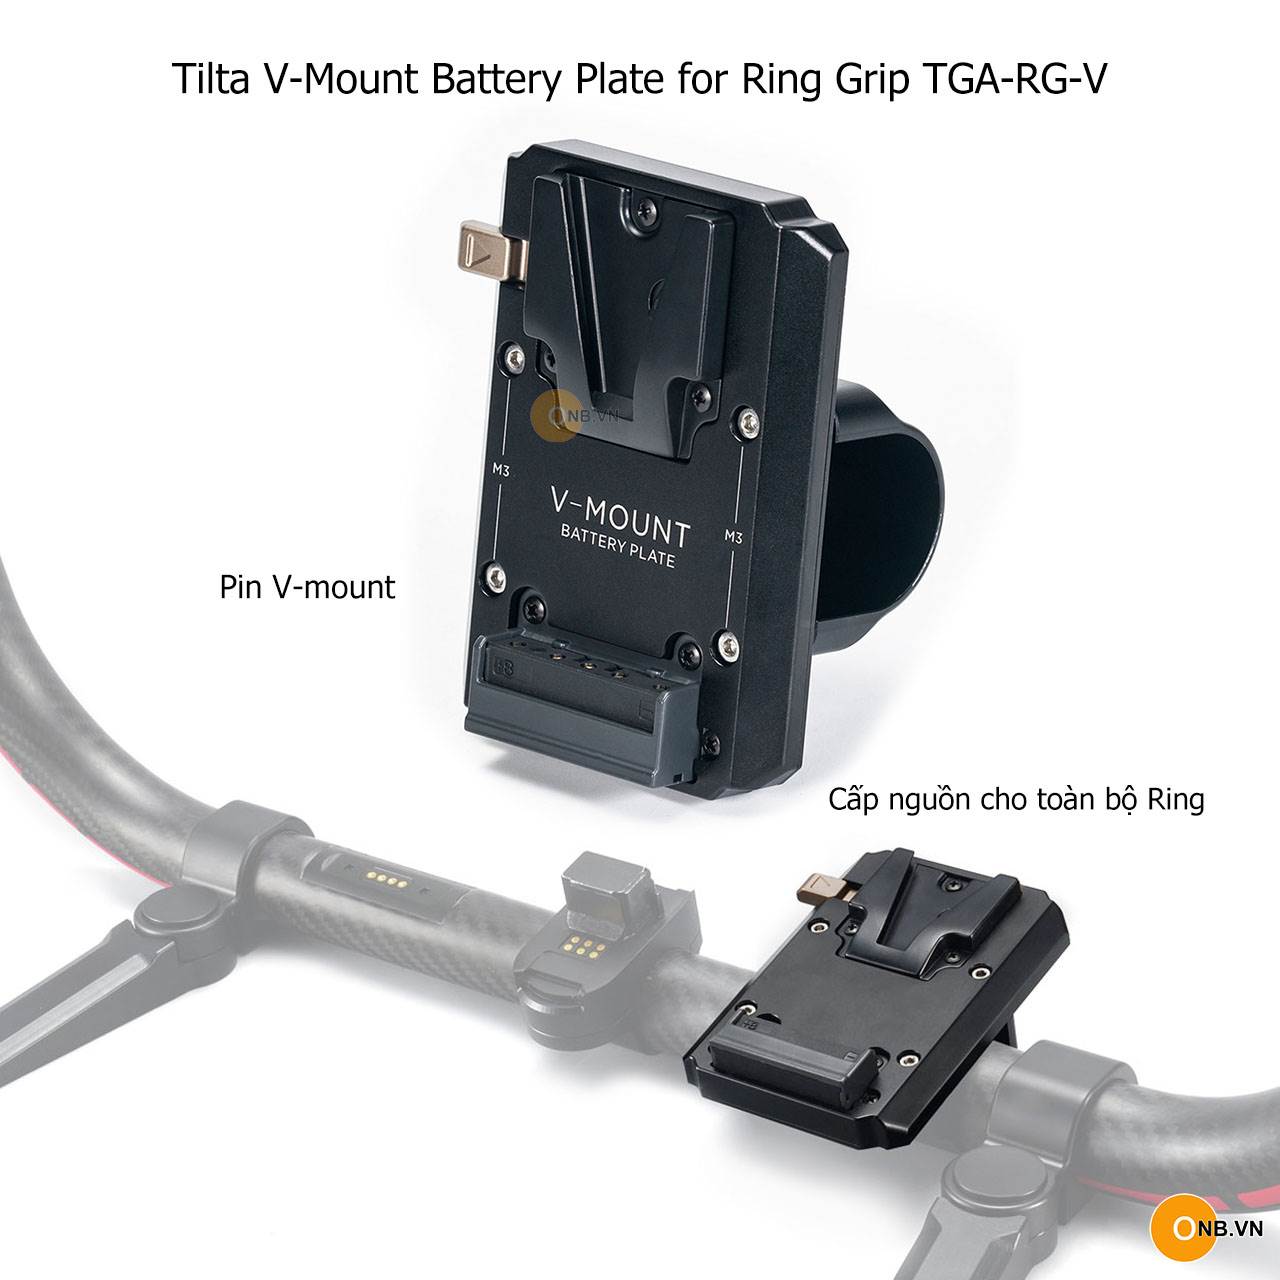 Tilta V-Mount Battery Plate for Ring Grip TGA-RG-V